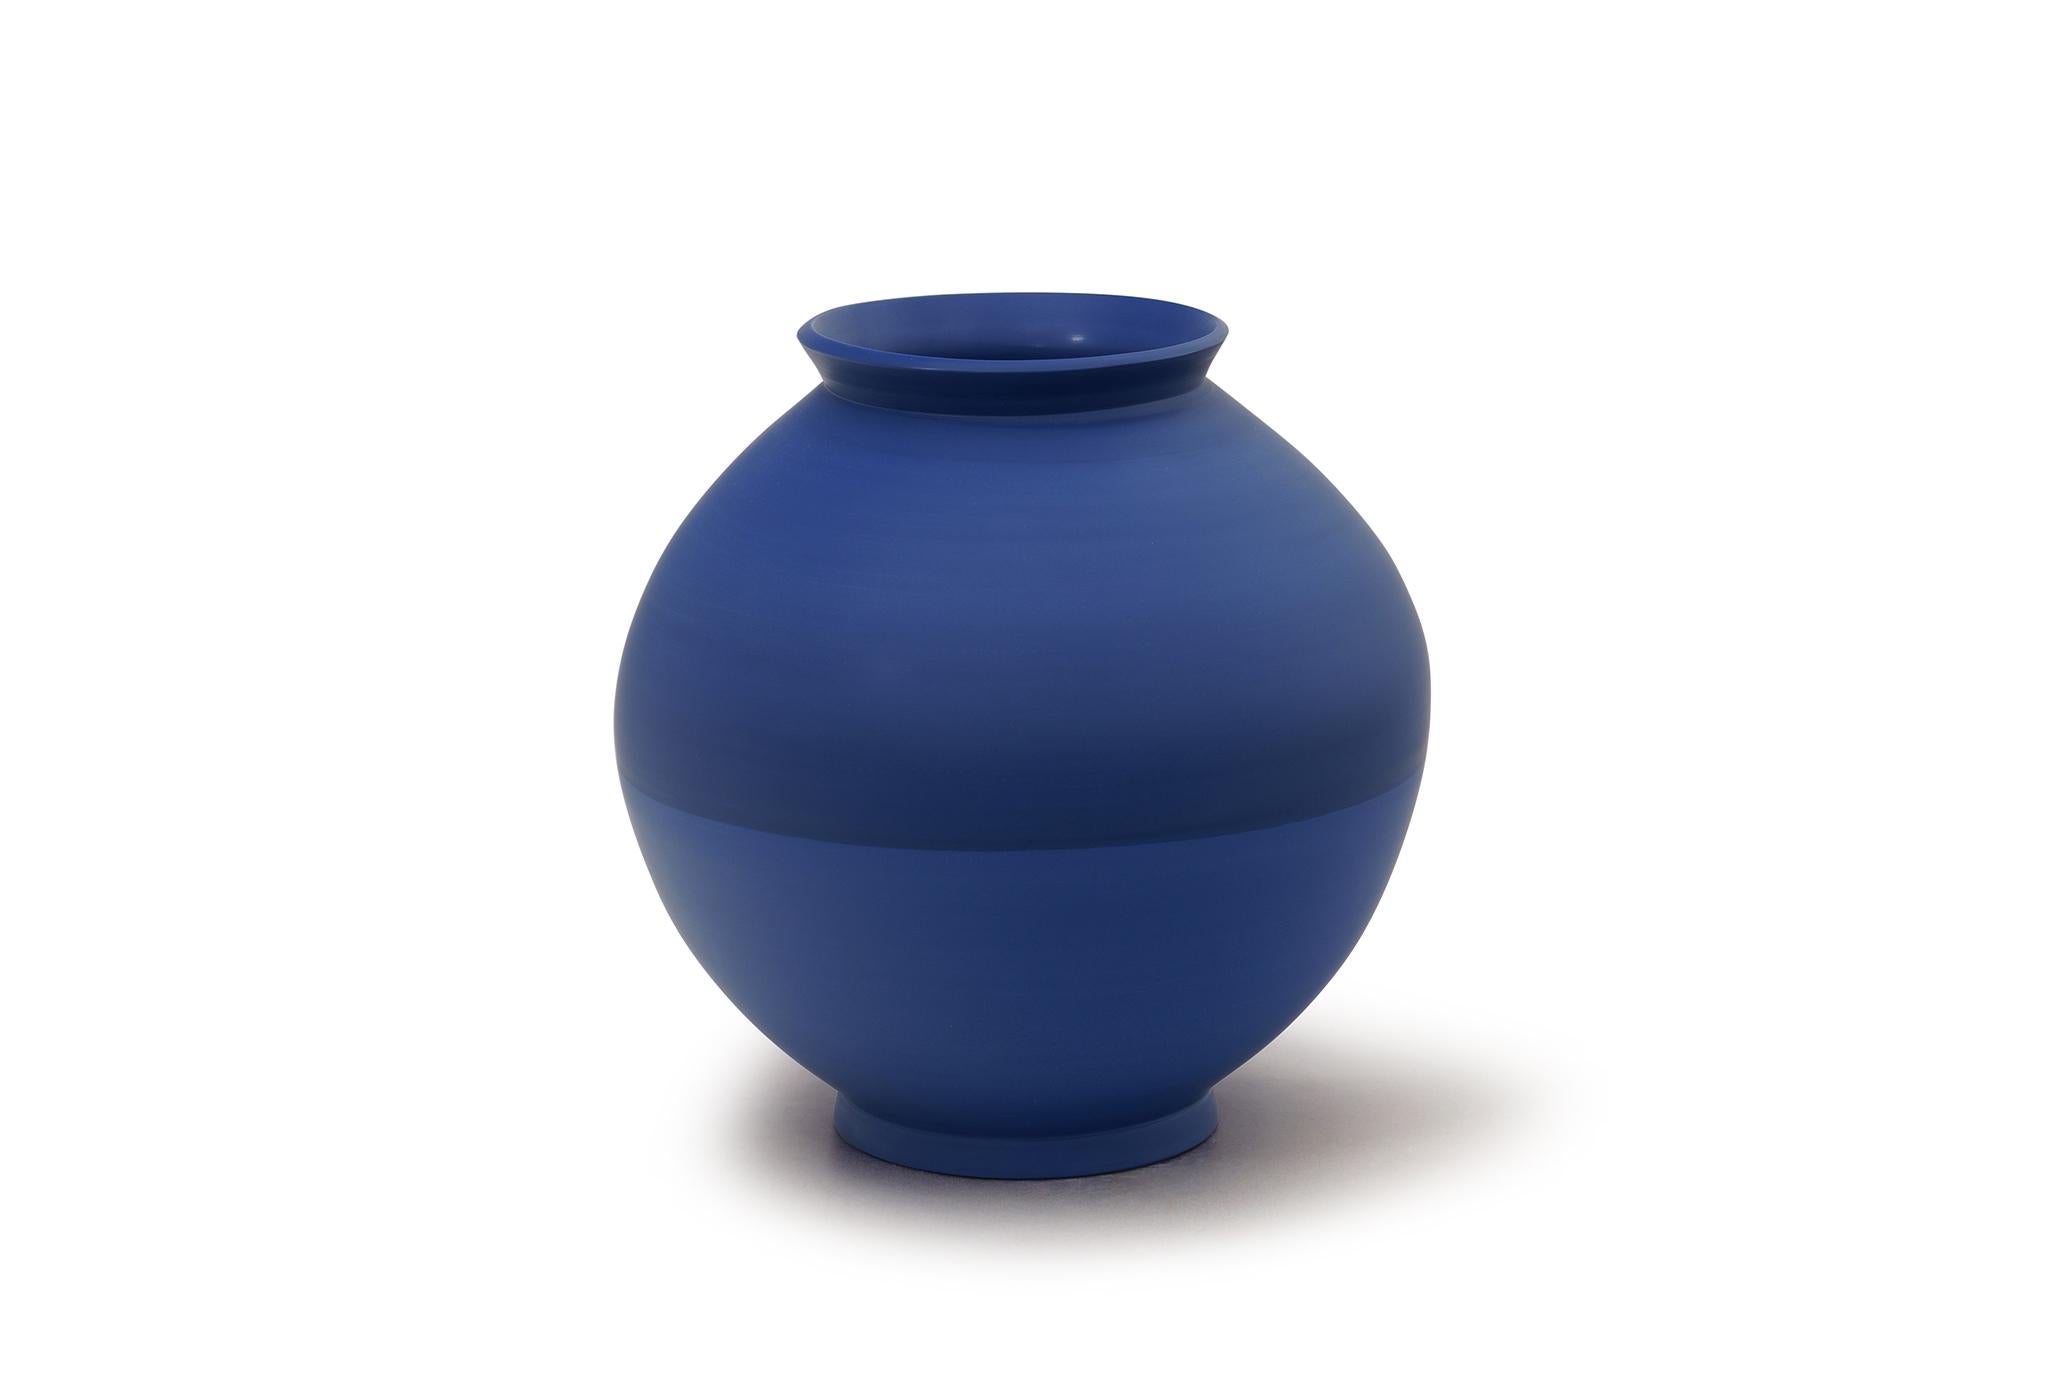 Halbe Vase von Jung Hong
Einzigartiges Stück
Abmessungen: B 26 x T 26 x H 27,5 cm
MATERIALIEN: Porzellan.
 
Ich verwende die Technik des 'sang-gam' (=Einlegearbeit) mit meinem speziellen Werkzeug, das ich selbst hergestellt habe, und kreiere zarte